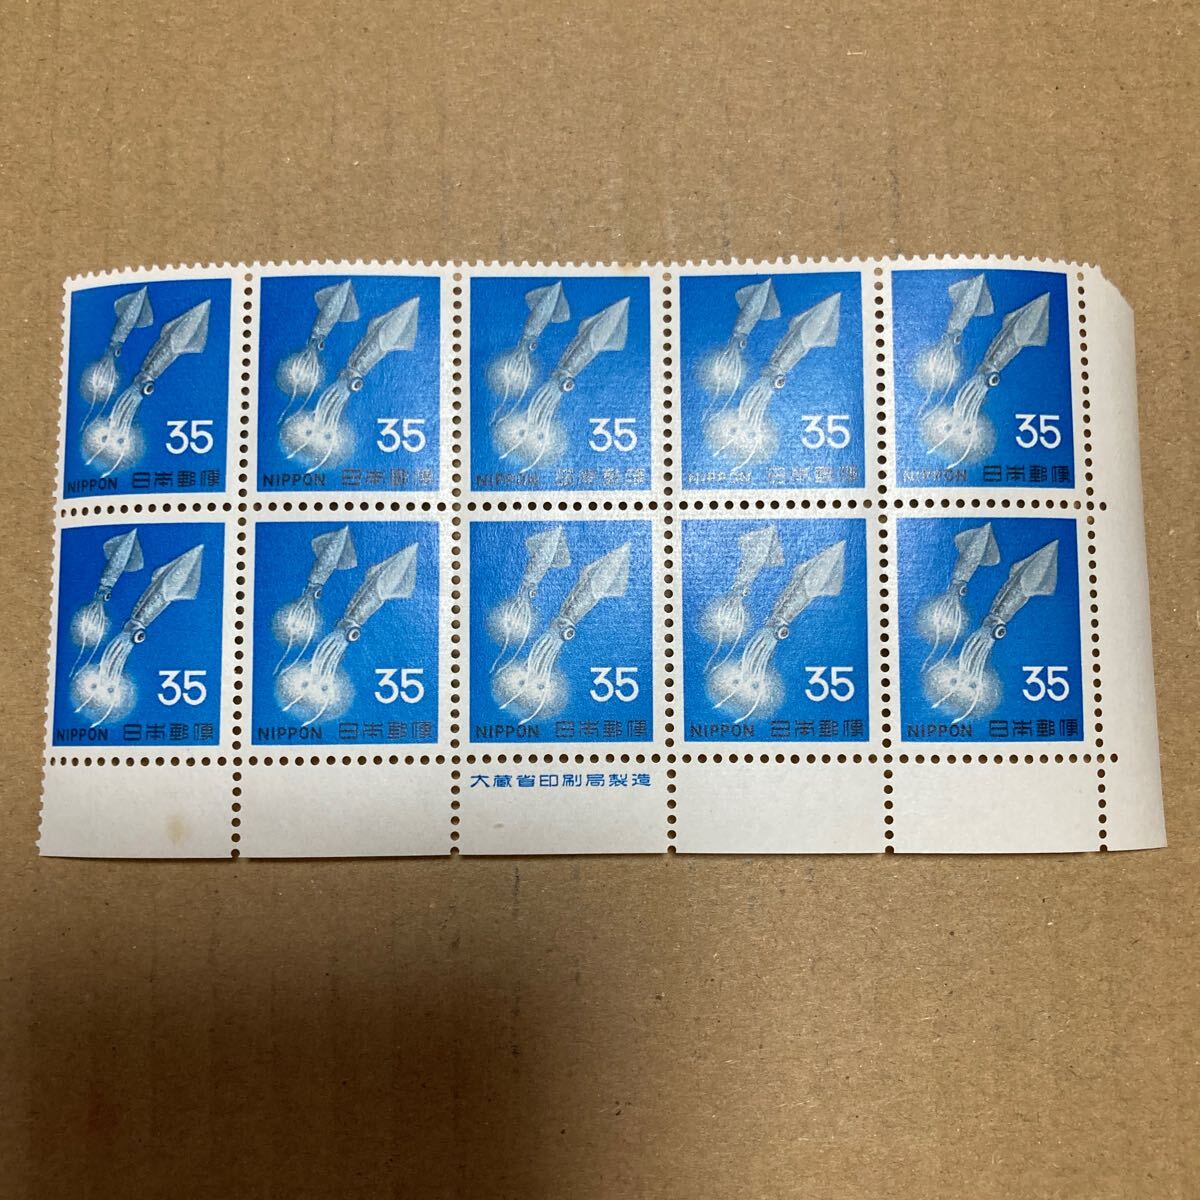 切手 スルメイカ 35円 10枚ブロック 銘版付き の画像1